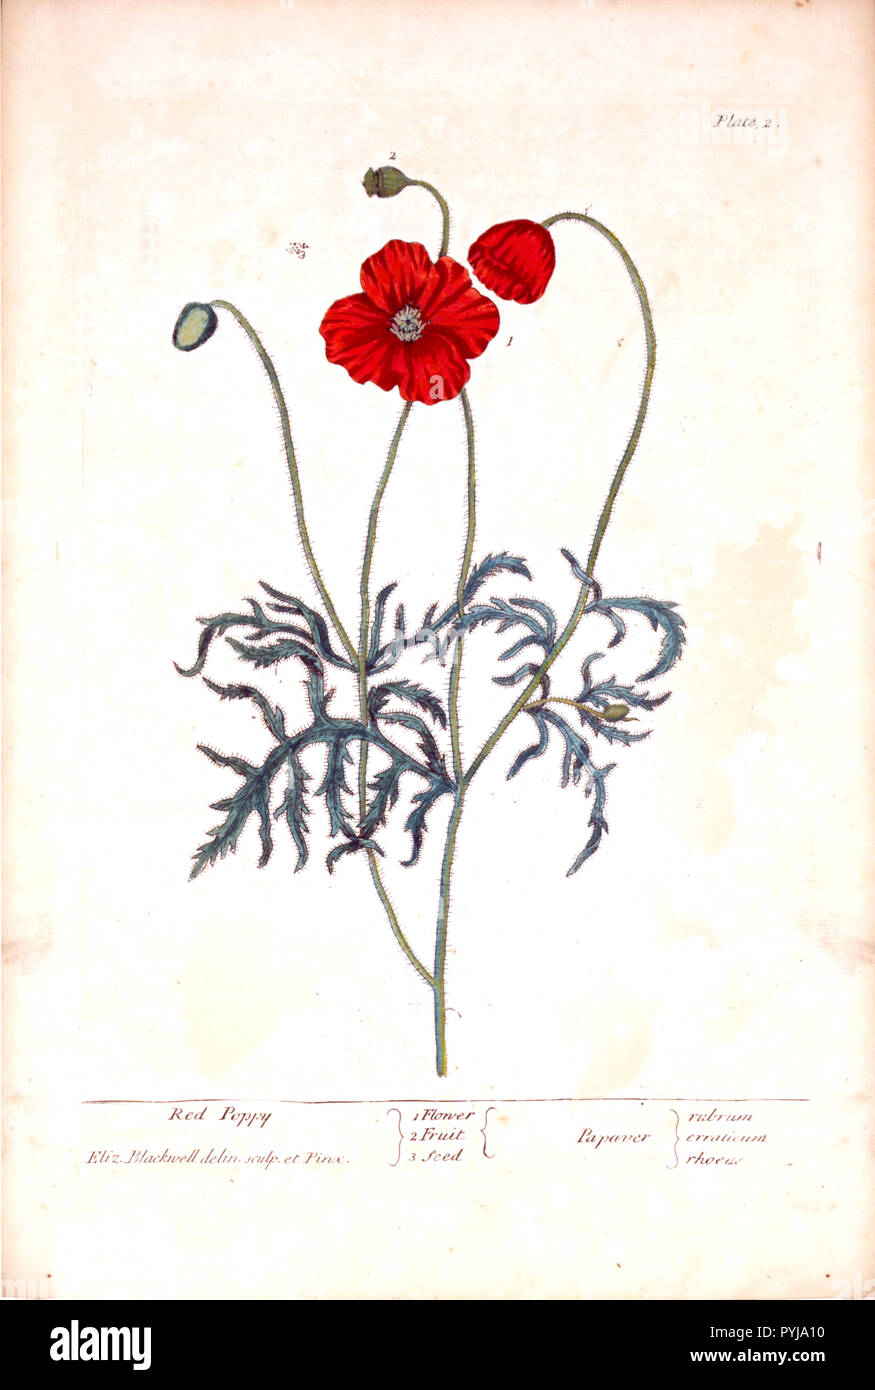 Planche 2 de Elizabeth Blackwell un curieux de plantes. Illustration de la fleur, fruit, et les graines de pavot rouge. Banque D'Images